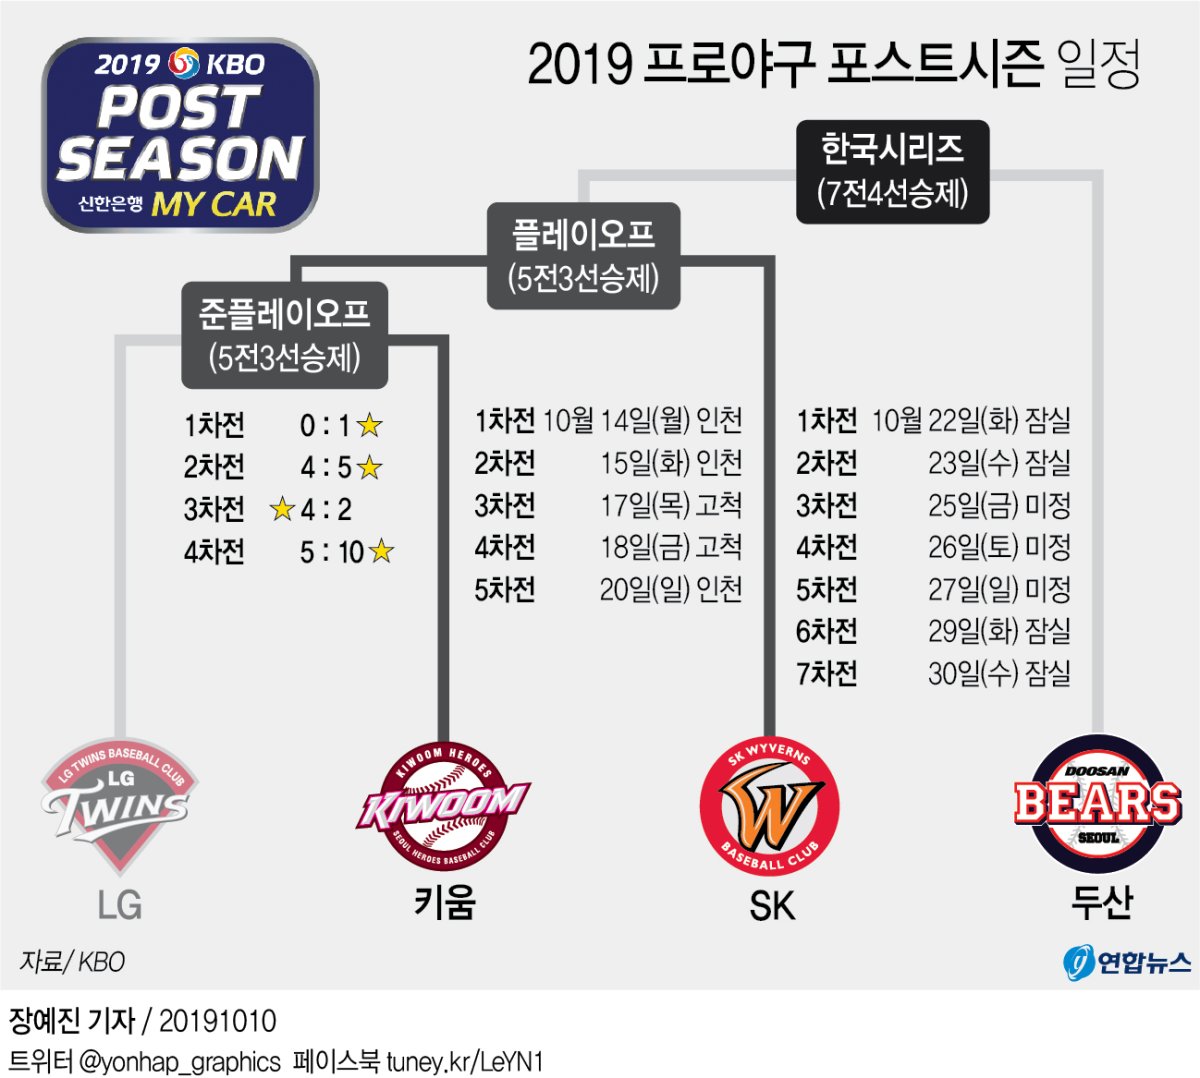 [그래픽] 2019 프로야구 포스트시즌 일정